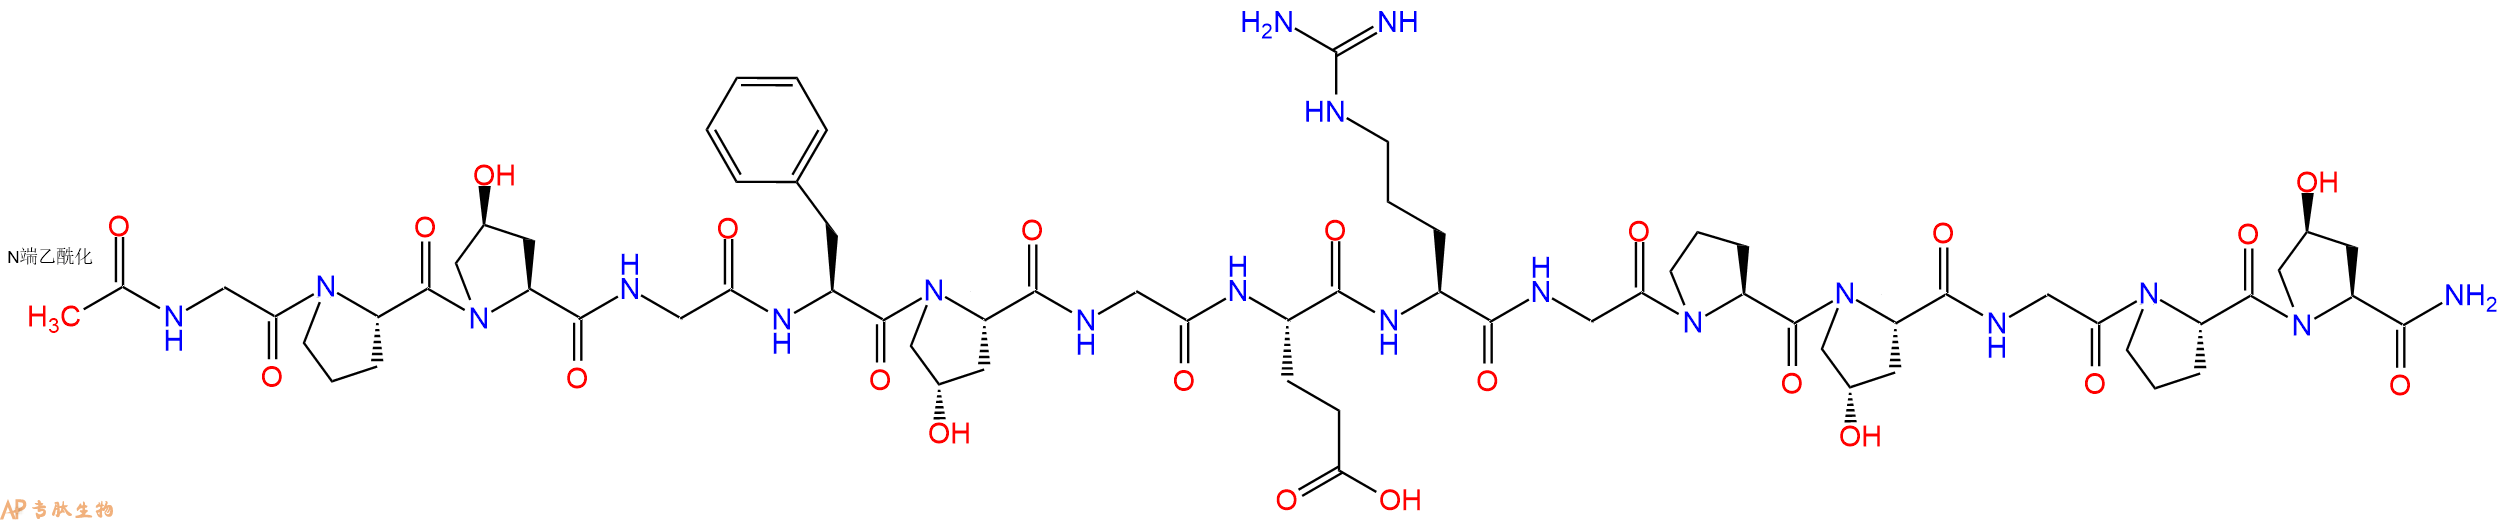 专肽生物产品Ac-Gly-Pro-Hyp-Gly-Phe-Hyp-Gly-Glu-Arg-Gly-Pro-Hyp